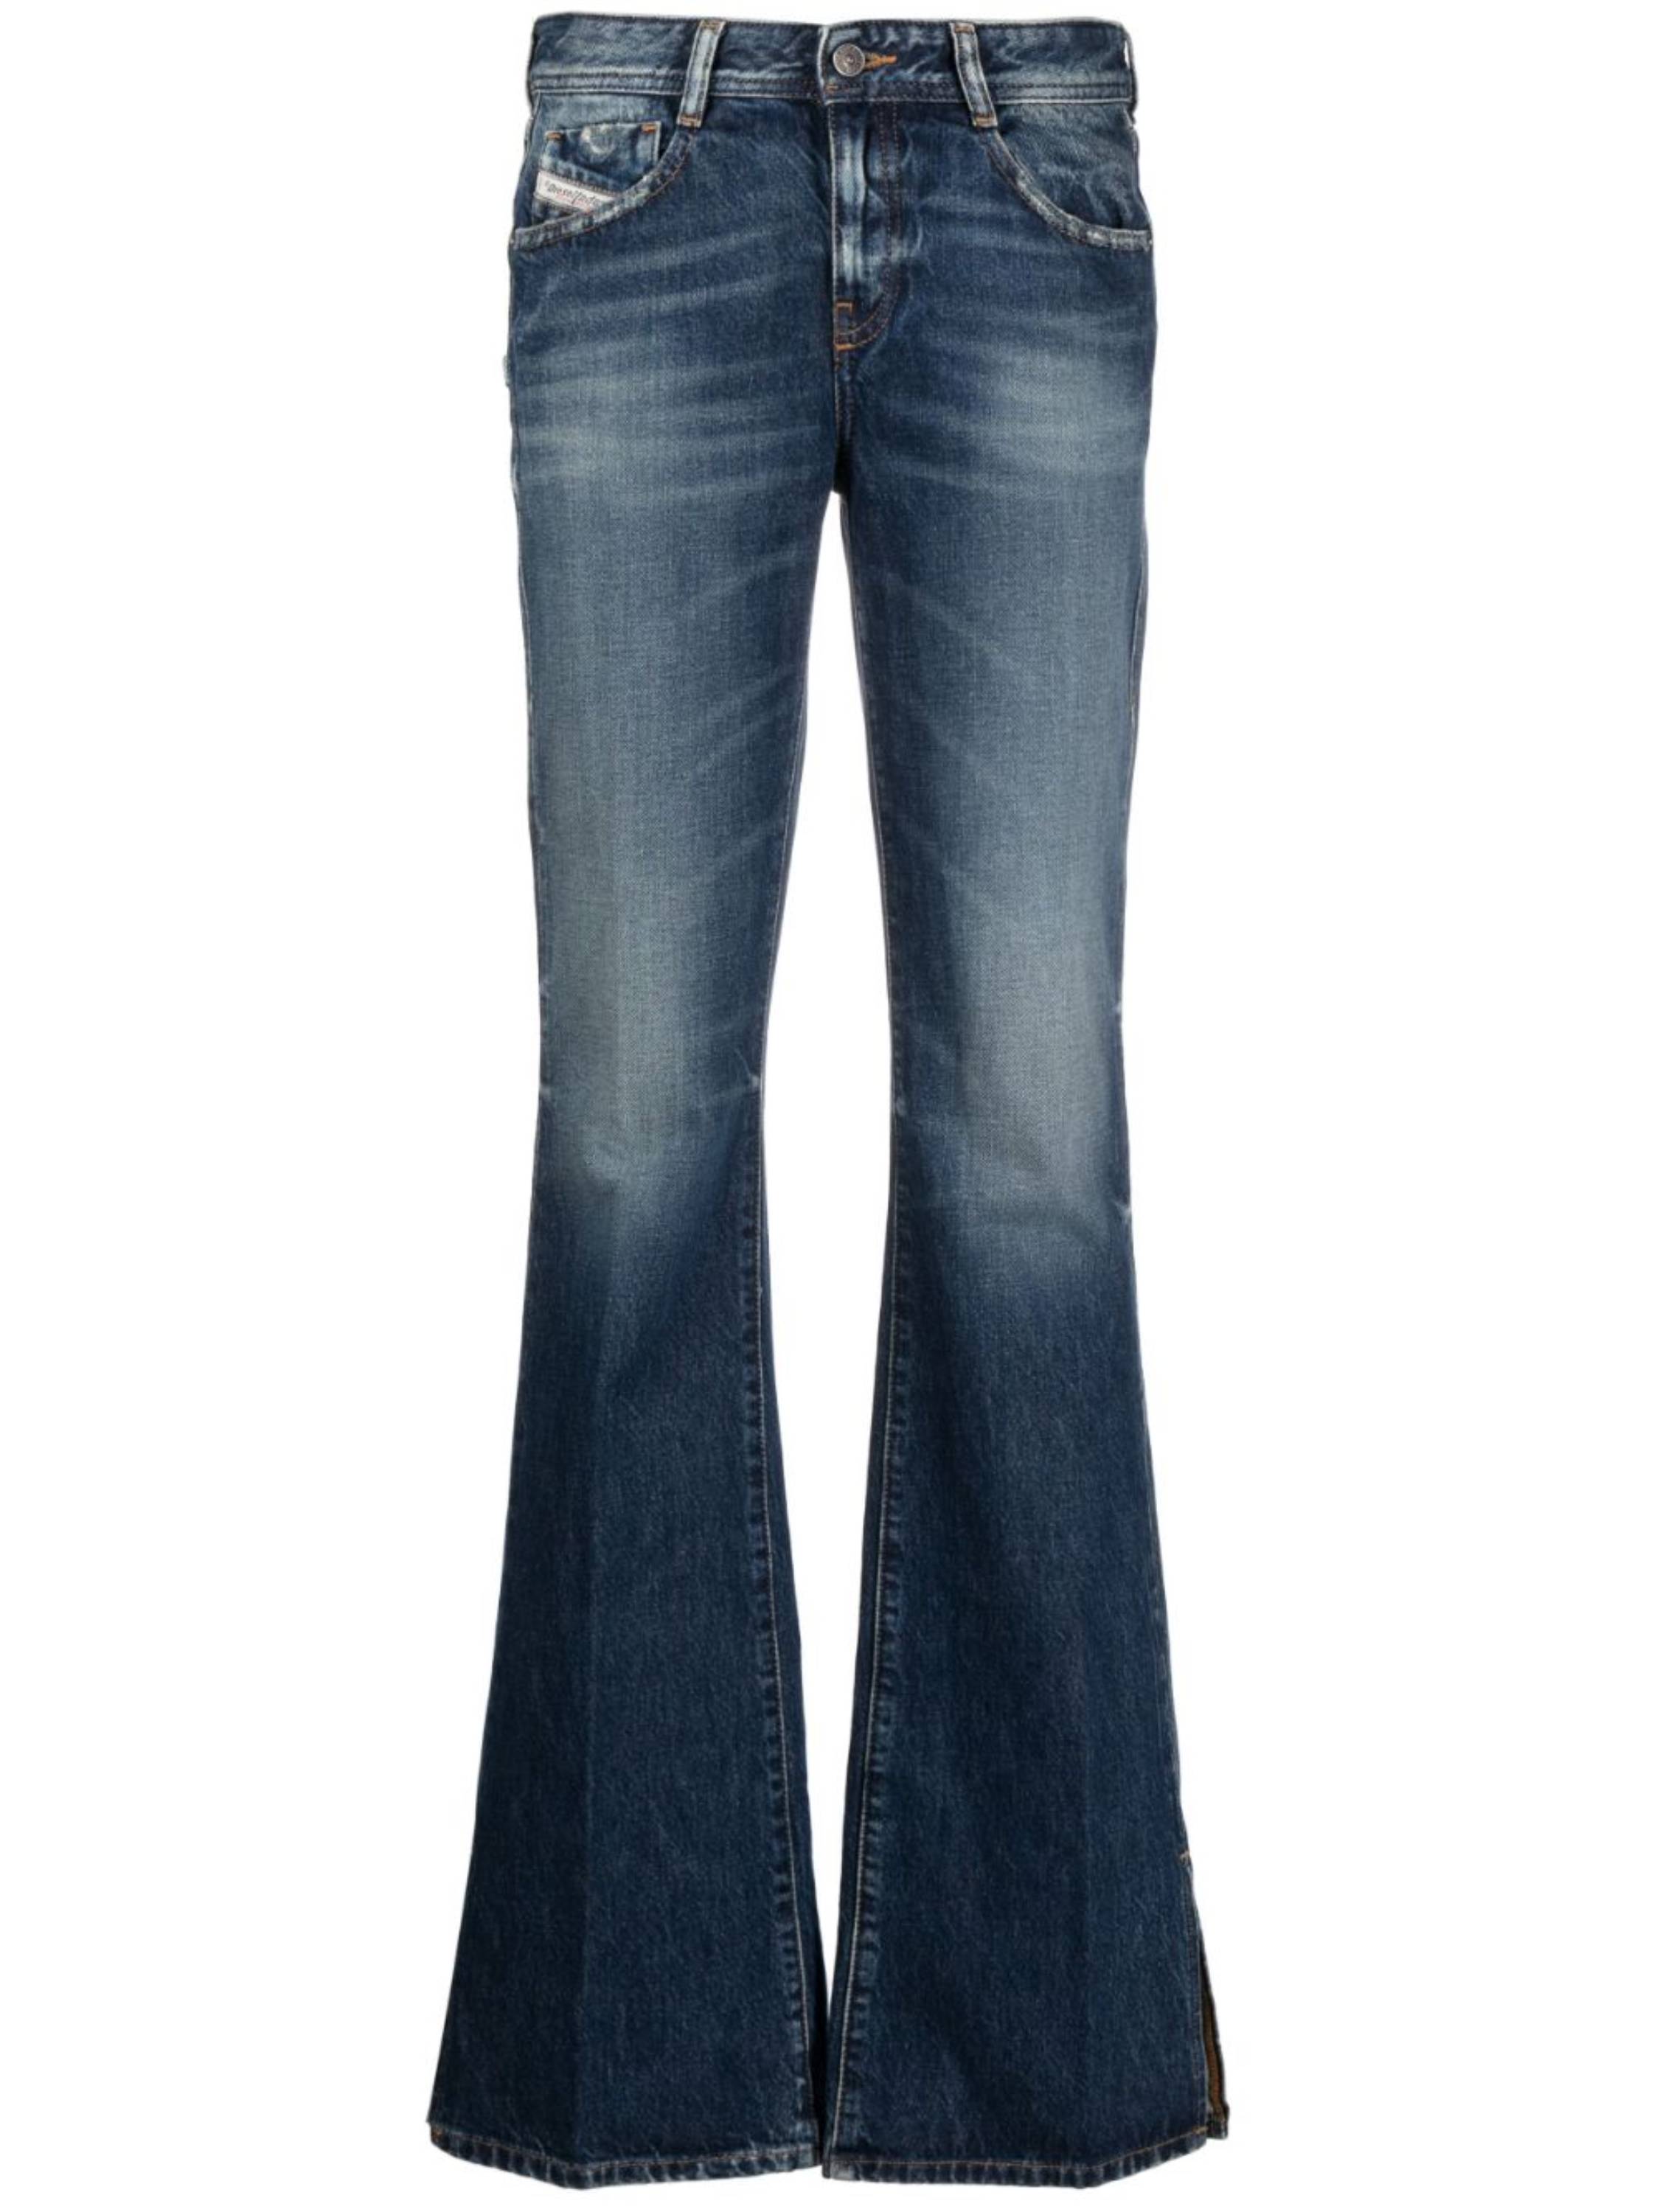 las mejores combinaciones para llevar jeans acampanados de lunes a viernes en la oficina